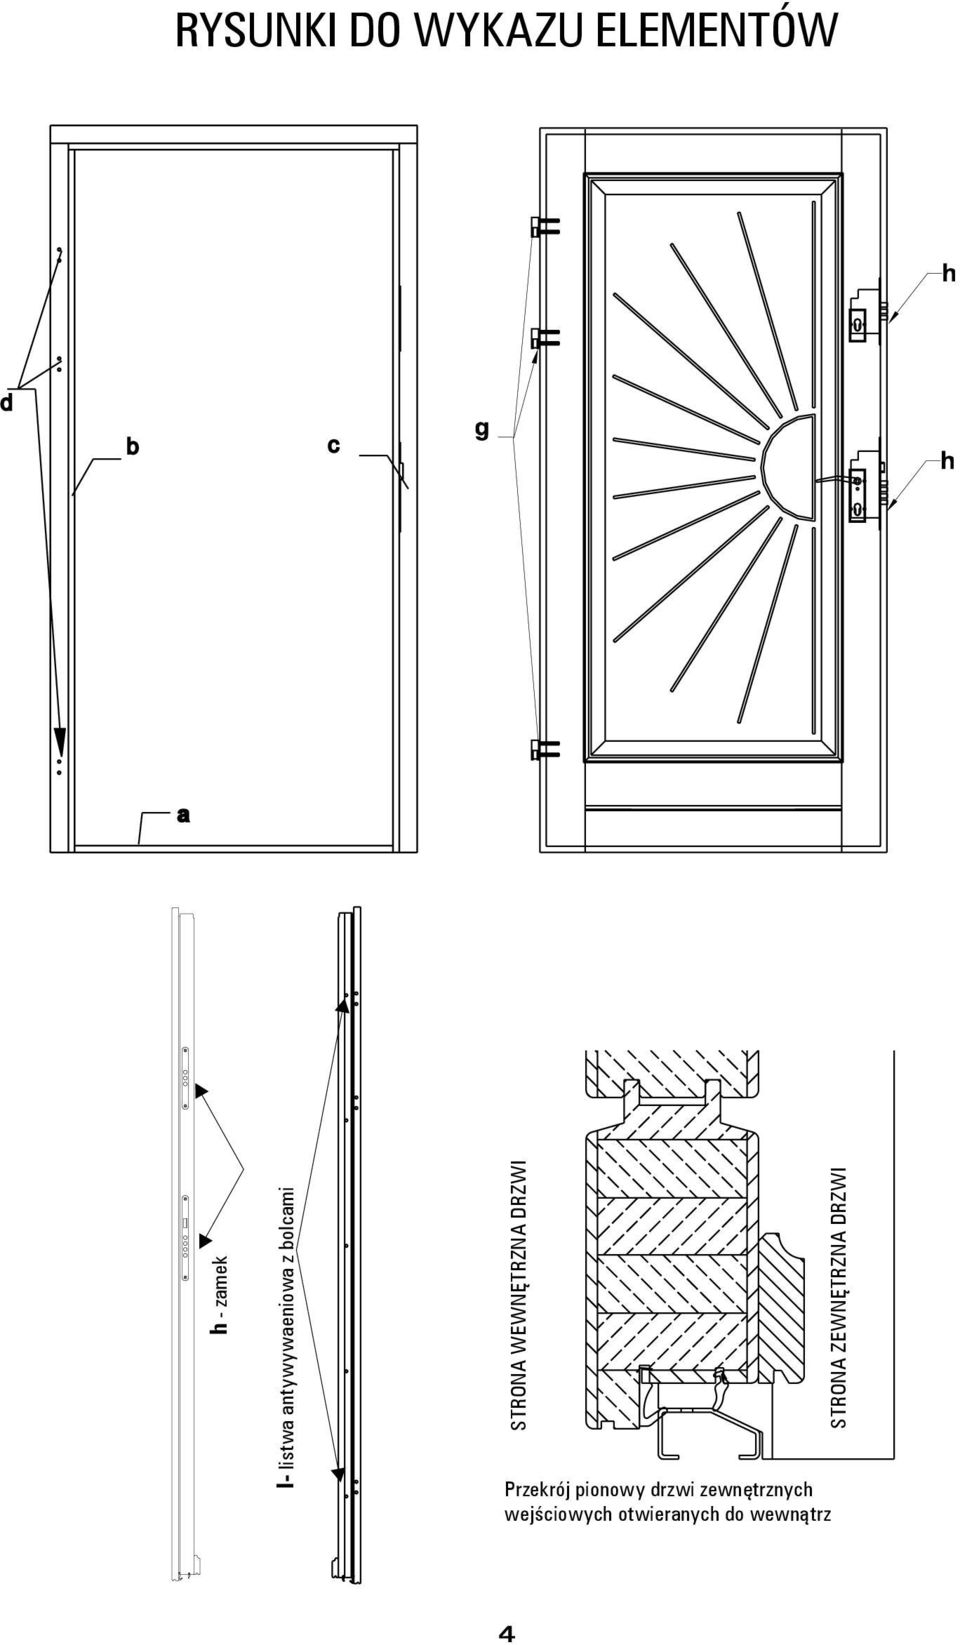 Przekrój pionowy drzwi zewnętrznych wejściowych